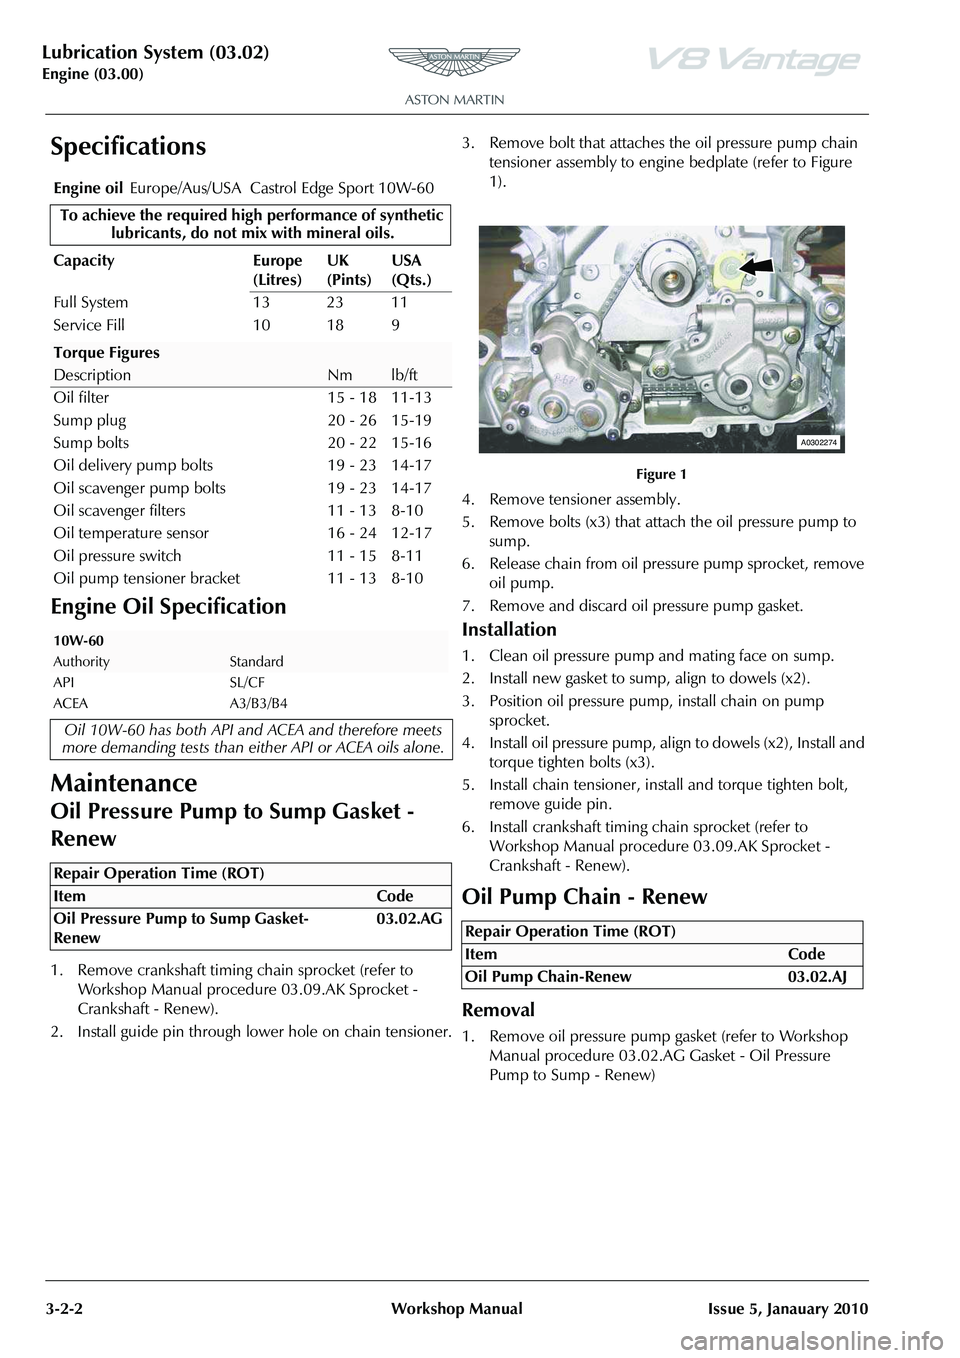 ASTON MARTIN V8 VANTAGE 2010  Workshop Manual Lubrication System (03.02)
Engine (03.00)3-2-2 Workshop Manual Issue 5, Janauary 2010
Specifications
Engine Oil Specification
Maintenance
Oil Pressure Pump to Sump Gasket - 
Renew
1. Remove crankshaft